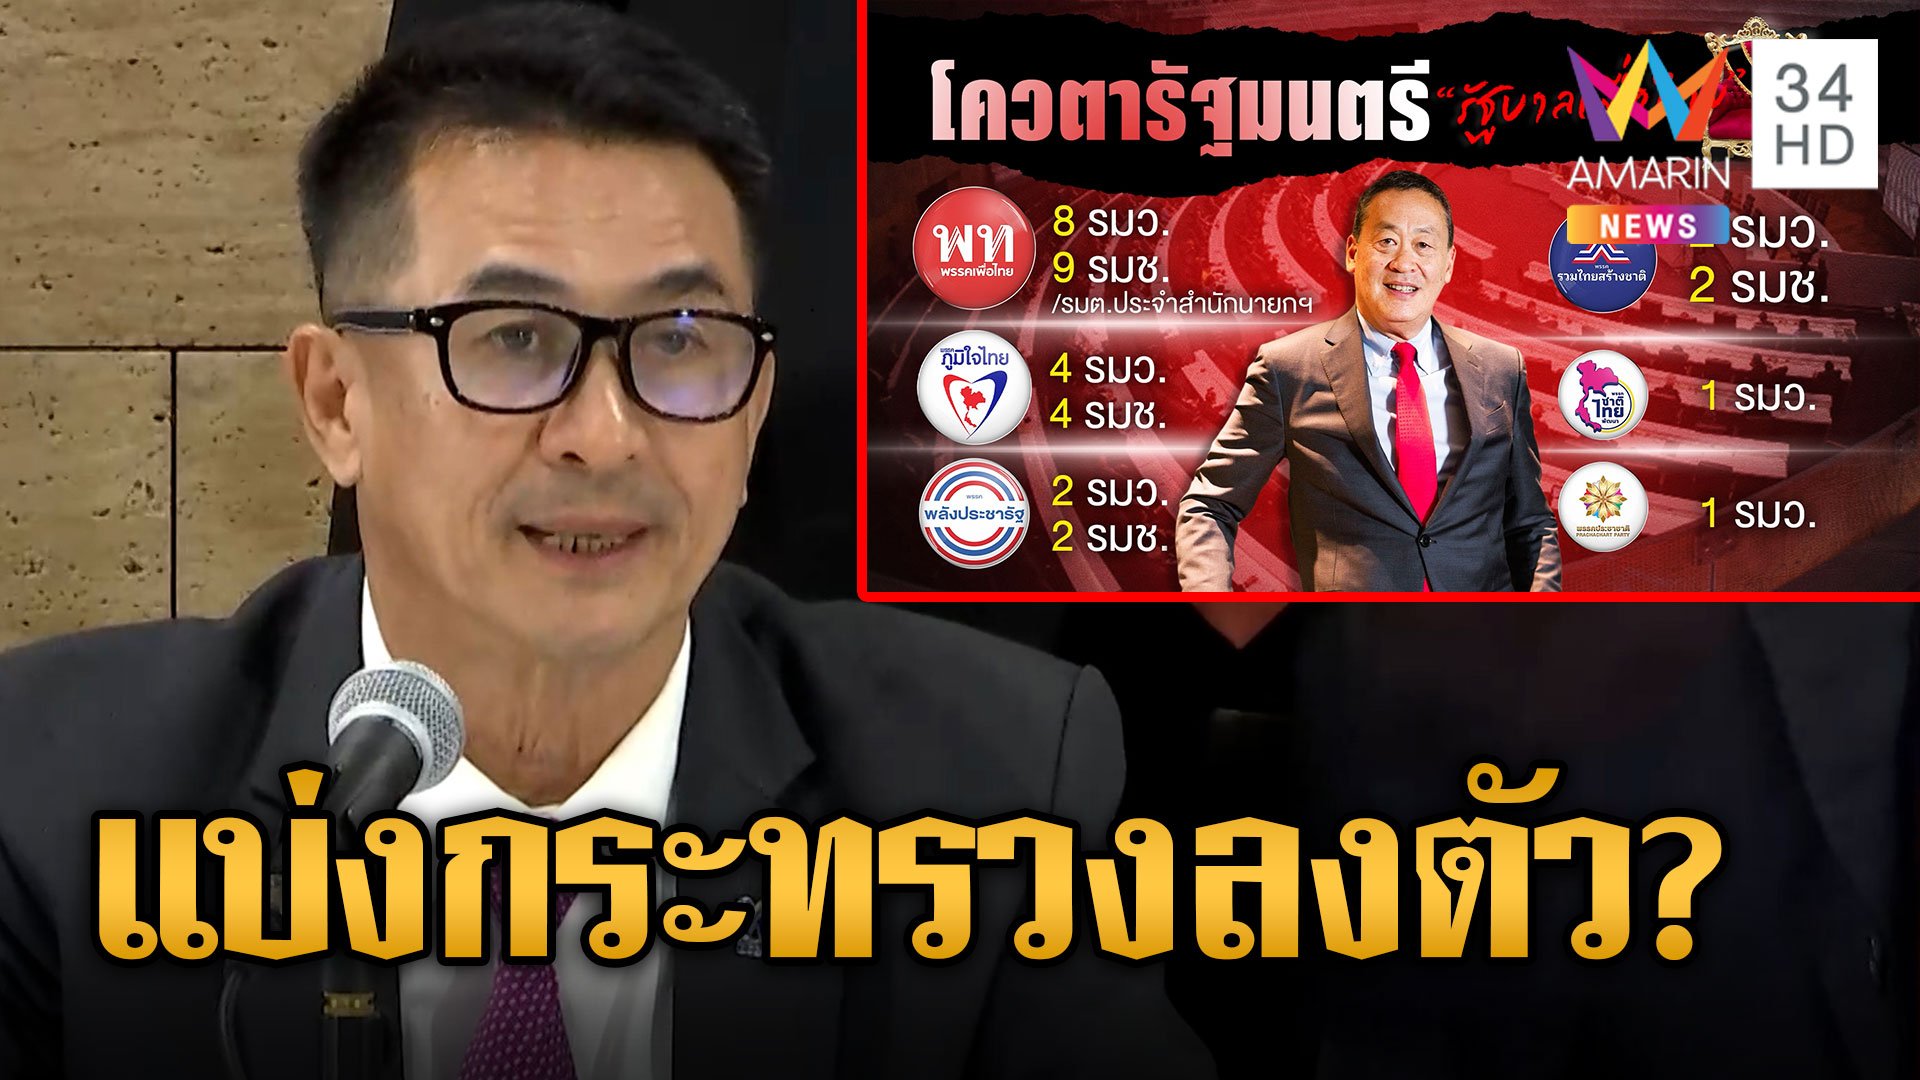 เพื่อไทย ปิดดีล 11 พรรคร่วมตั้งรัฐบาล แบ่งเก้าอี้ลงตัวลุ้นใครนั่งกระทรวงไหน | ข่าวอรุณอมรินทร์ | 22 ส.ค. 66 | AMARIN TVHD34